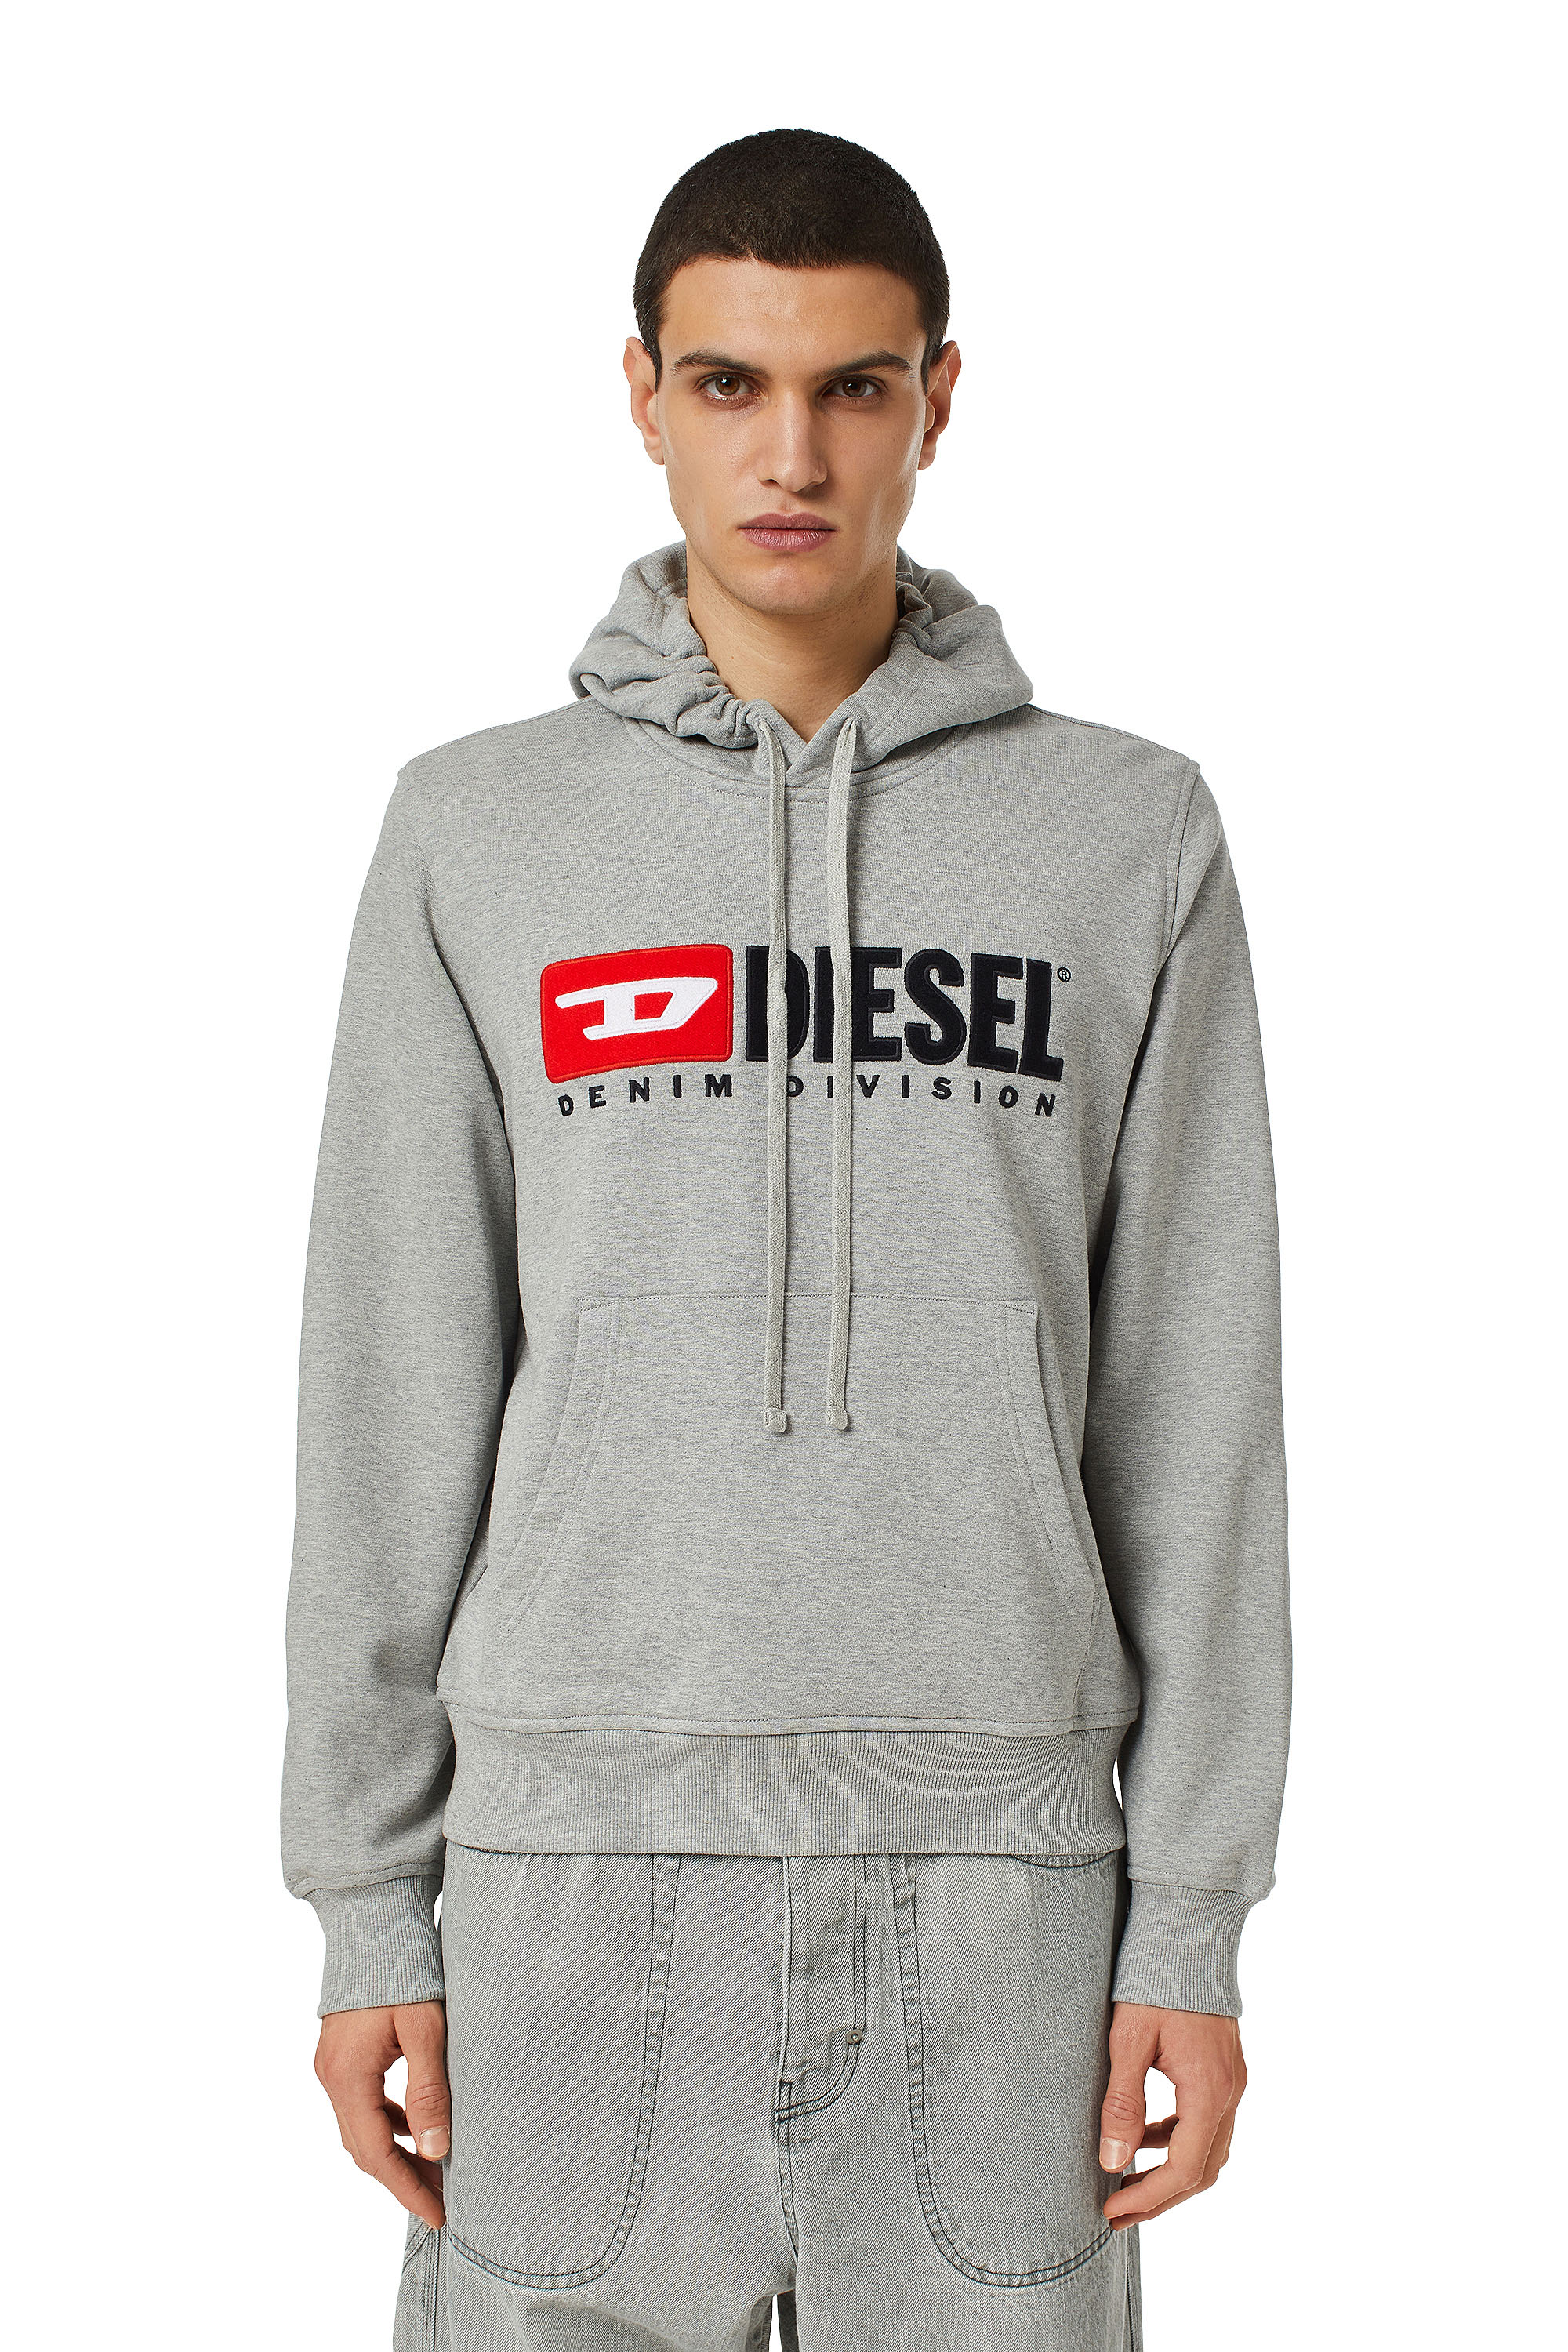 Diesel - S-GINN-HOOD-DIV, Man Denim Division hoodie in Grey - Image 1